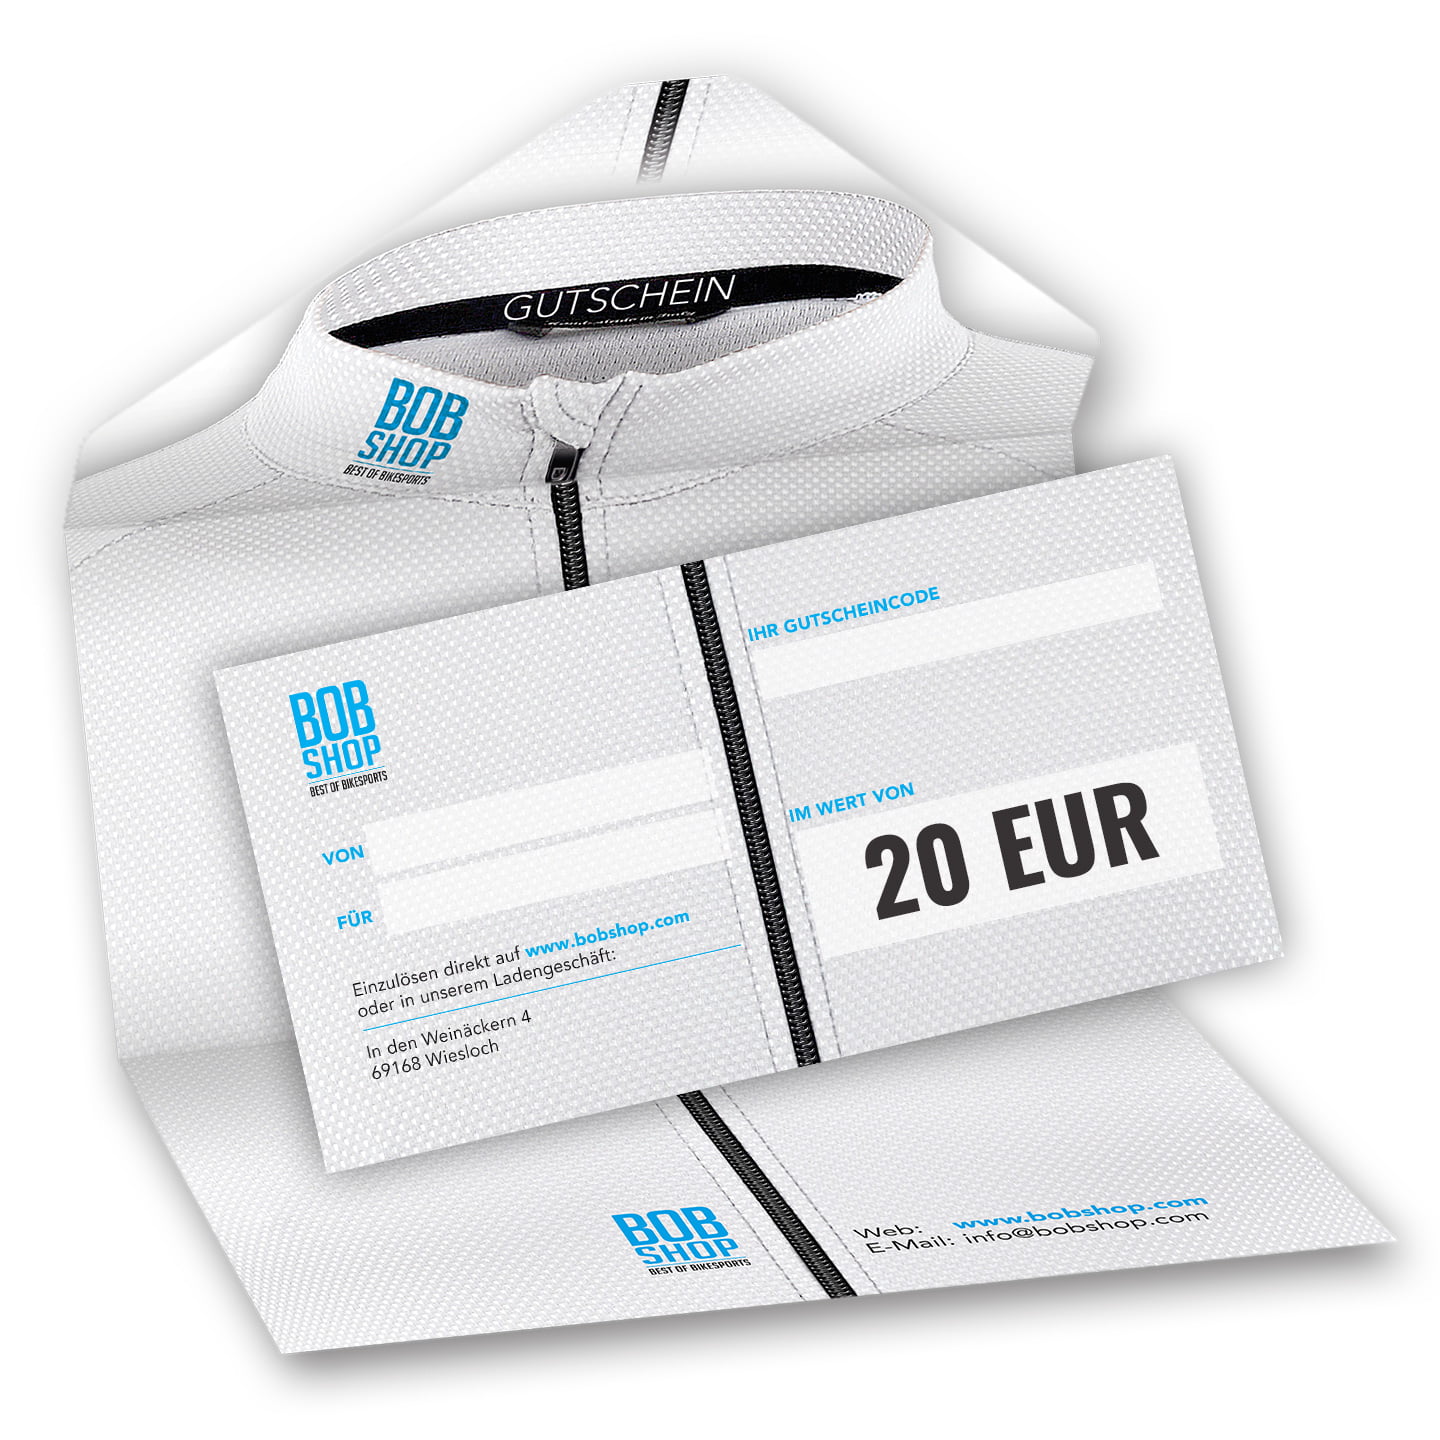 Photo Chèque-cadeau 20 EUR